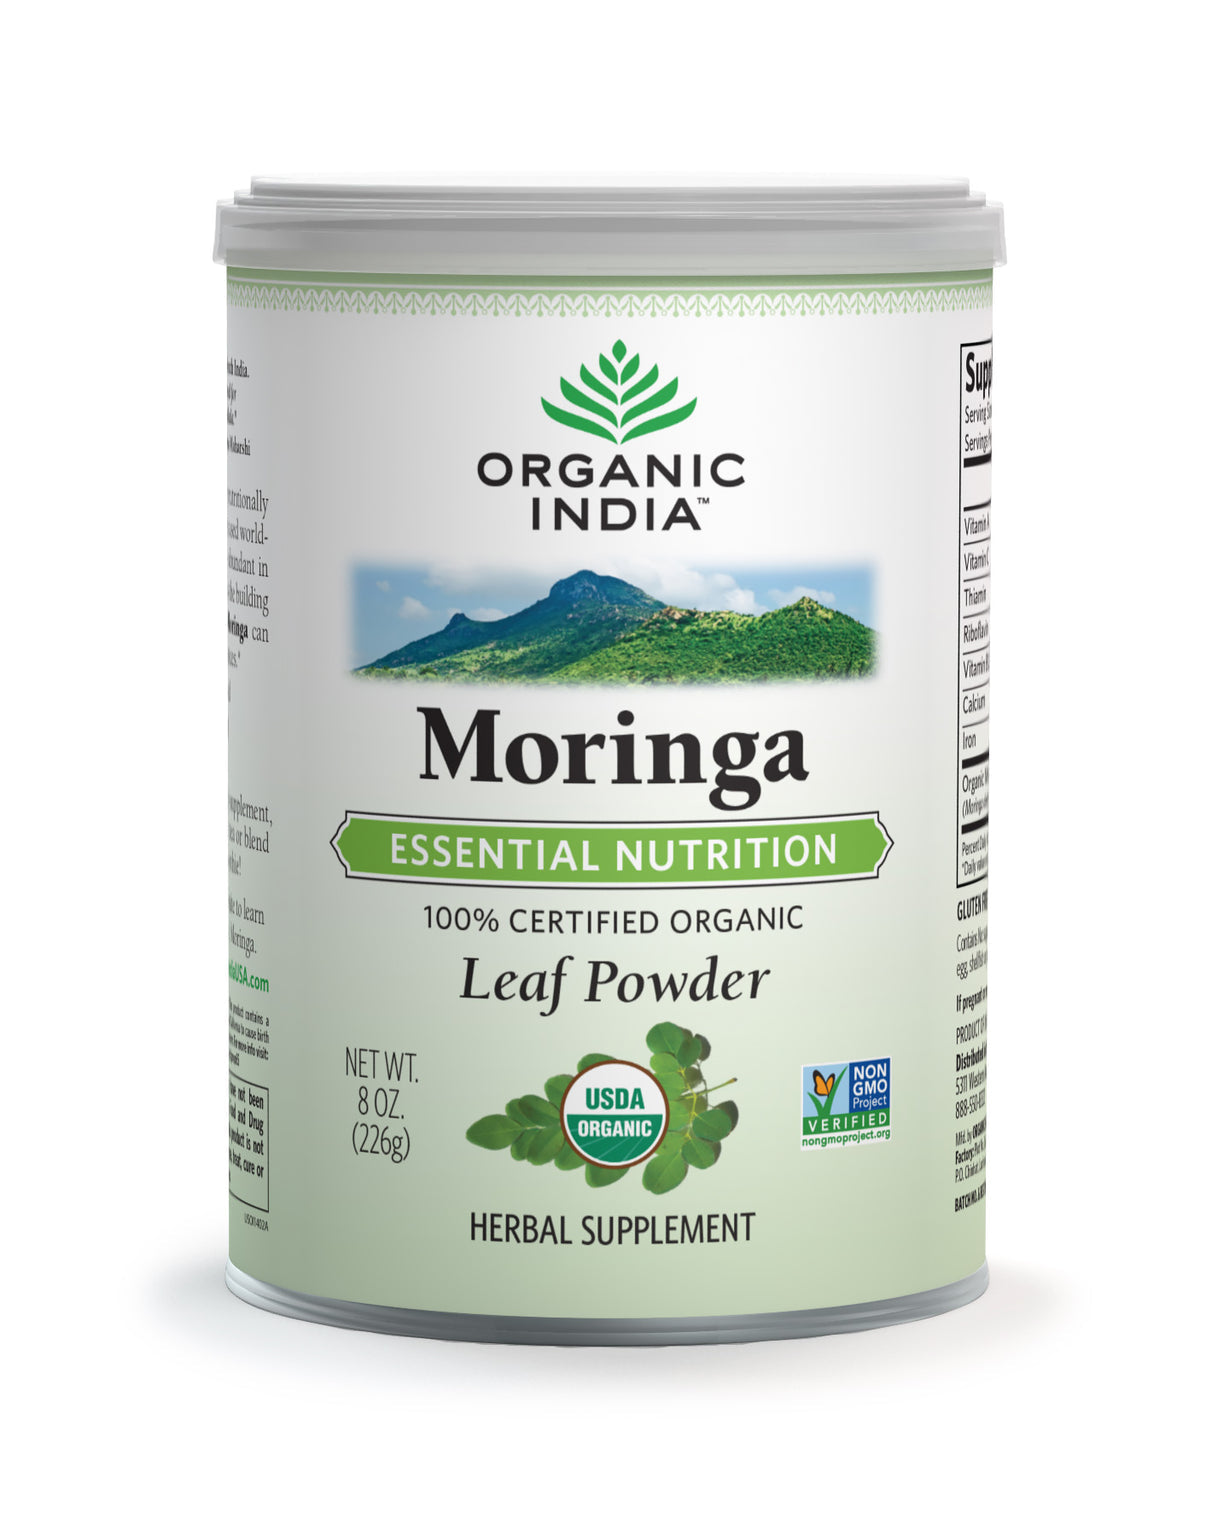 Organic India Moringa Leaf Powder 226g, Certified Organic